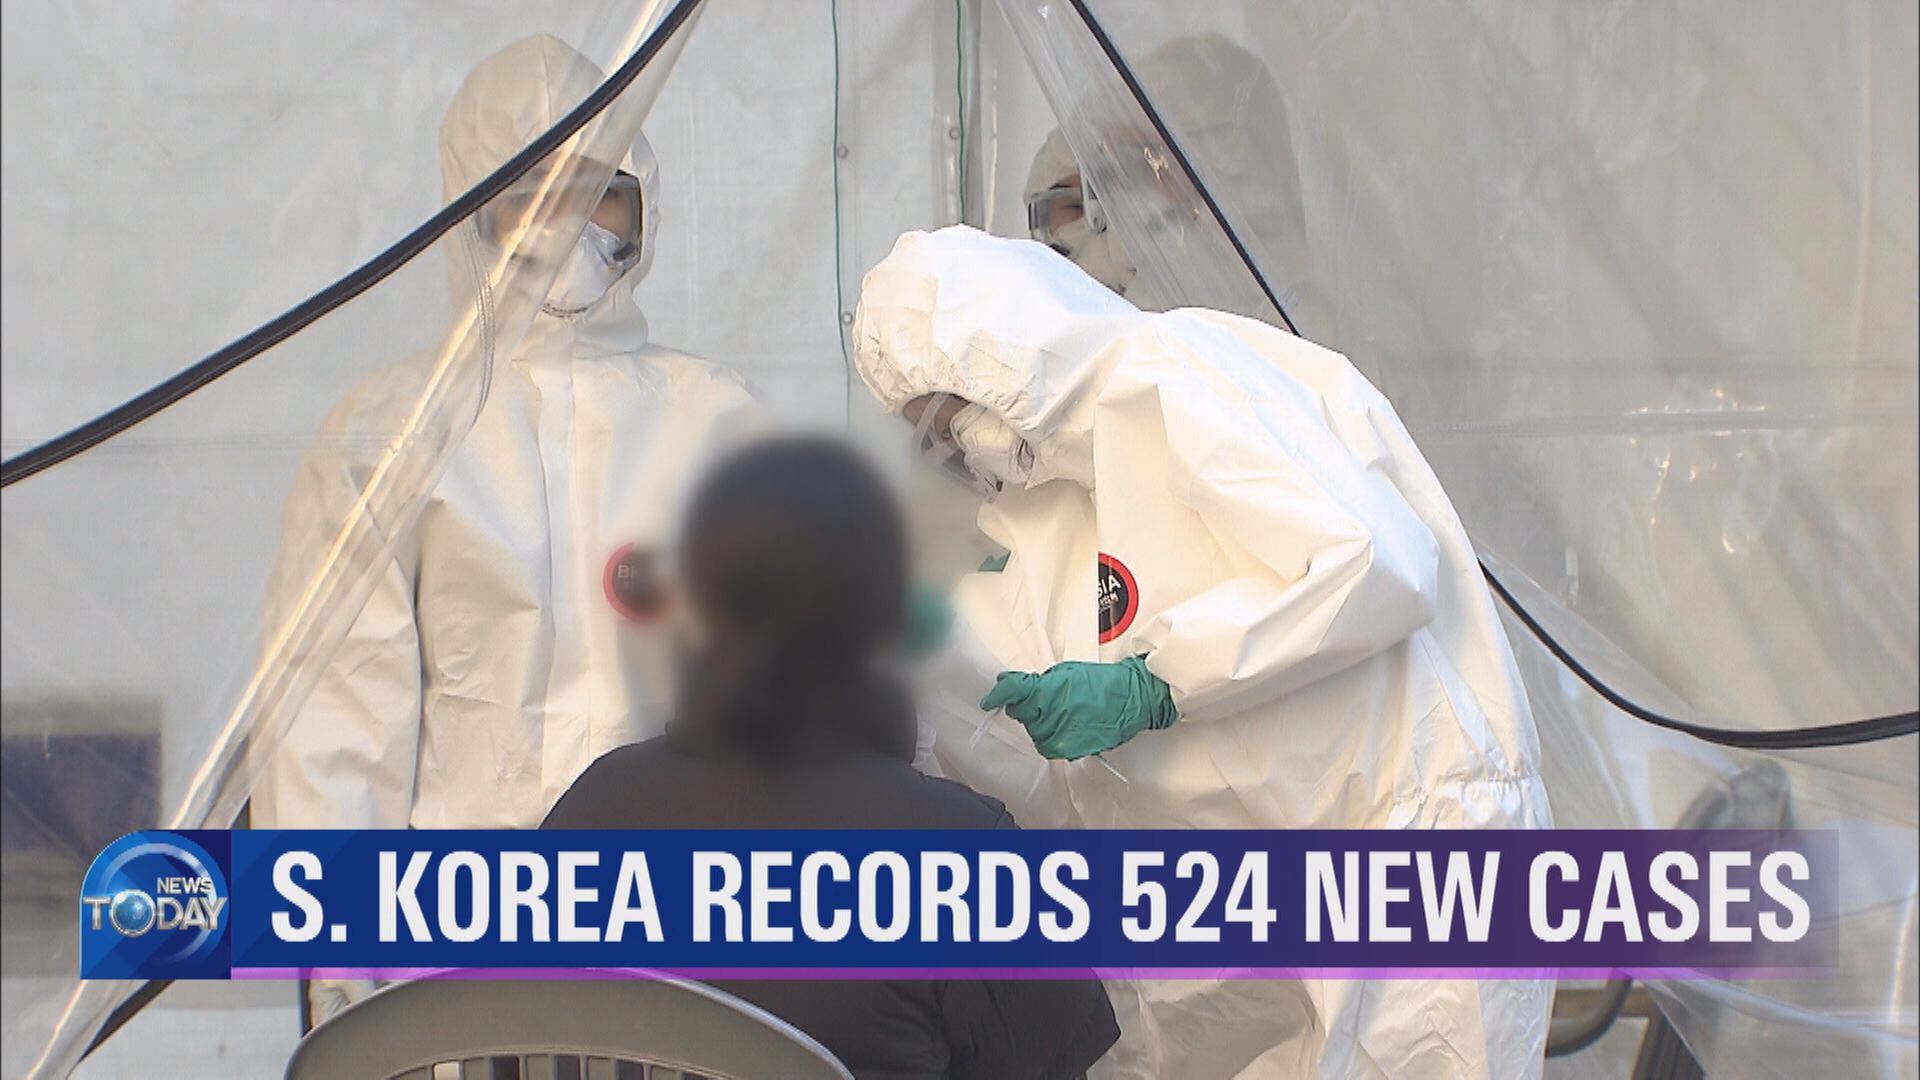 S. KOREA RECORDS 524 NEW CASES